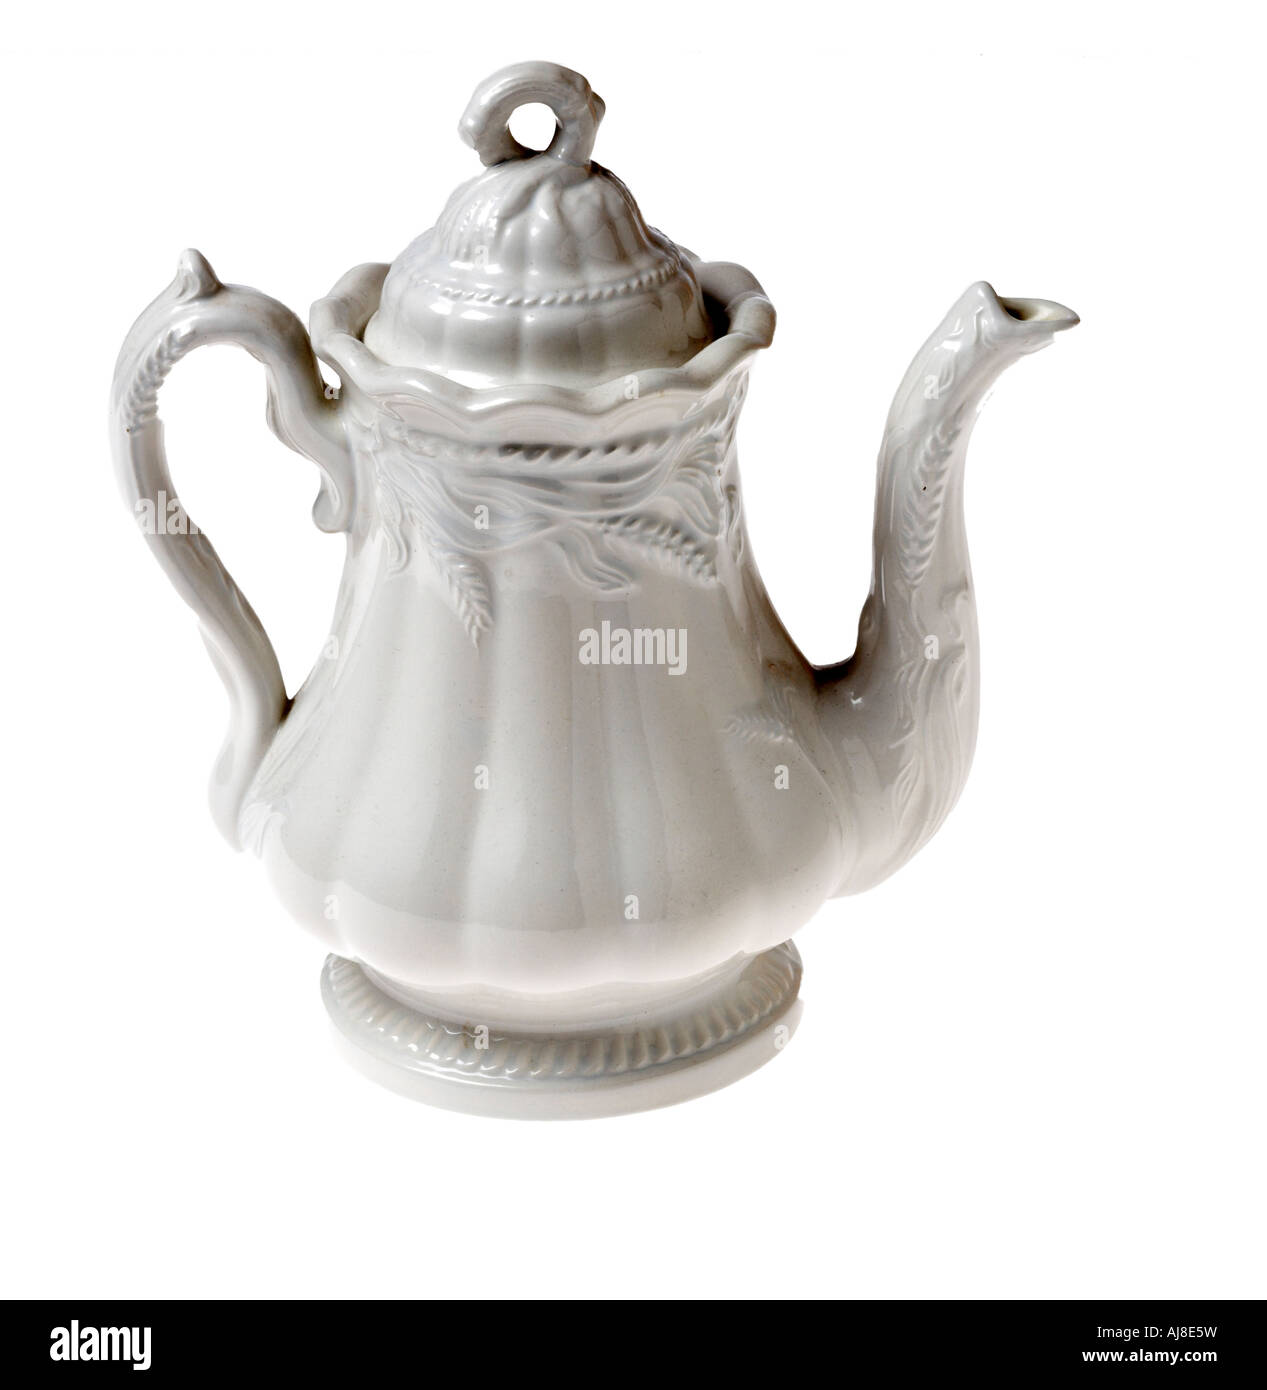 https://c8.alamy.com/comp/AJ8E5W/antique-ceramic-coffee-pot-on-white-background-AJ8E5W.jpg